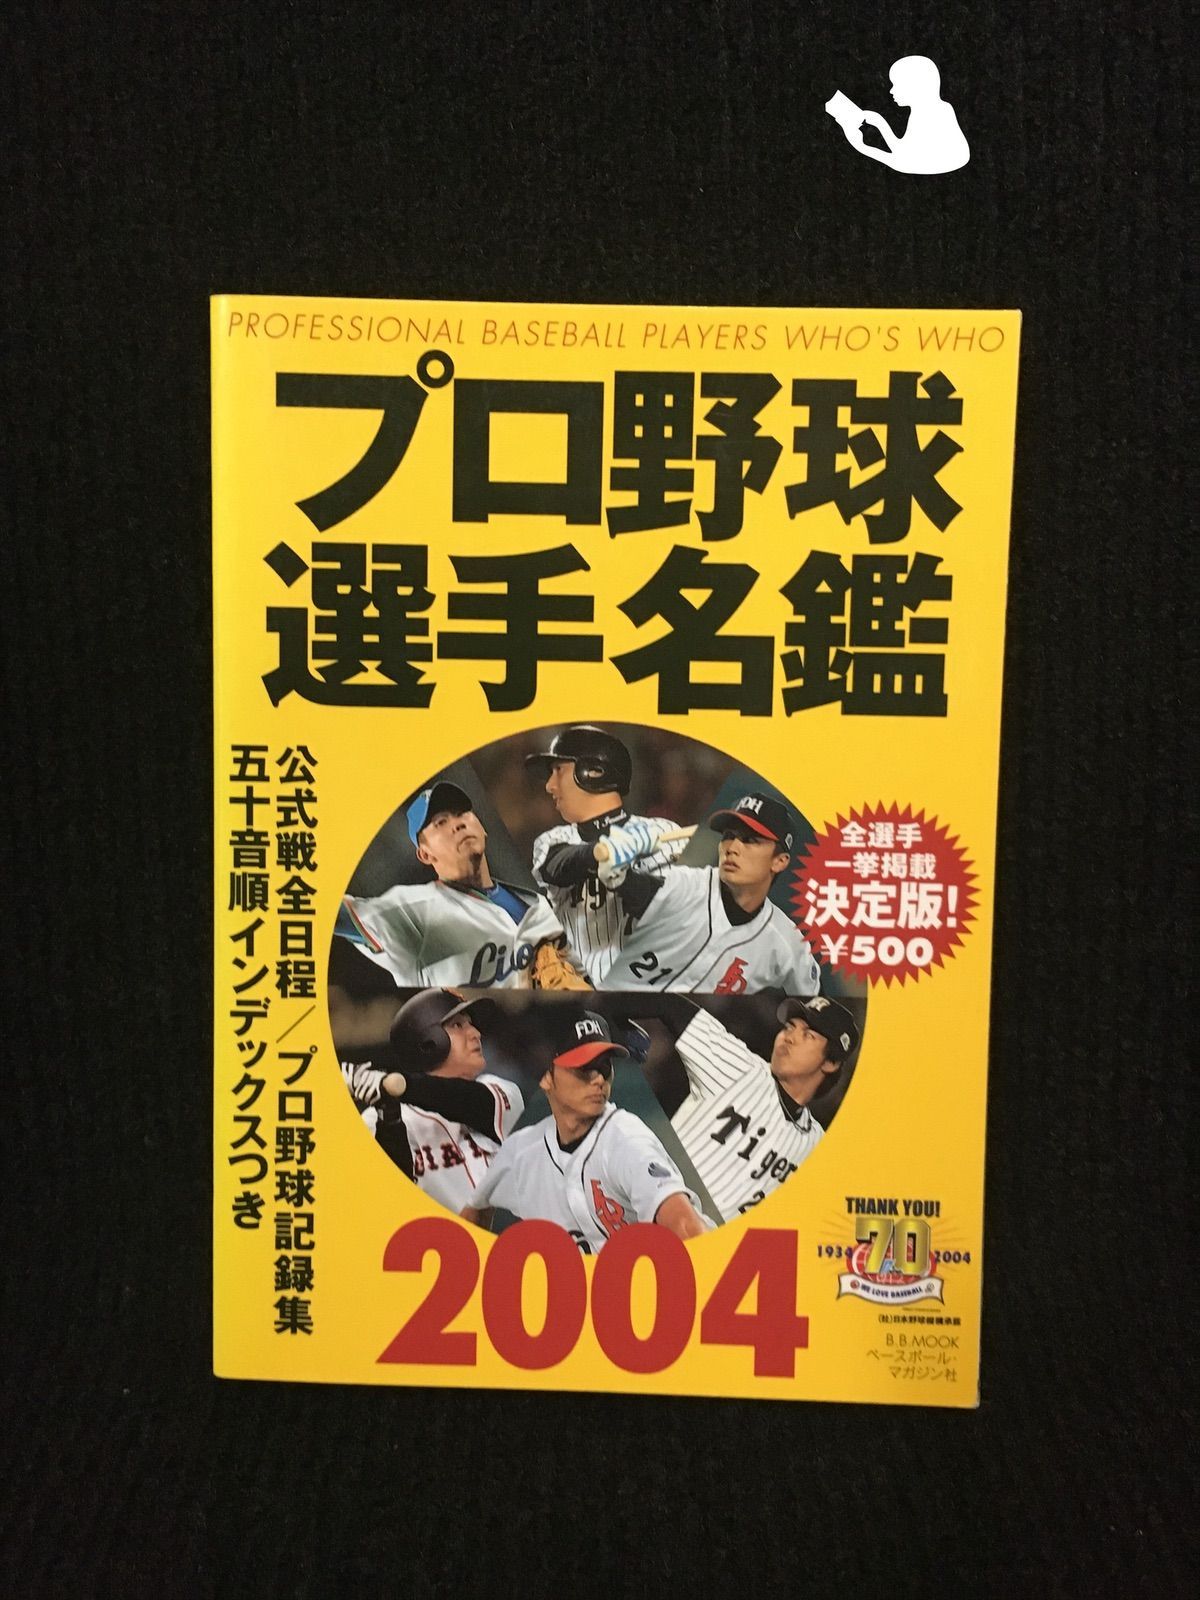 プロ野球選手名鑑?決定版! (2004) (B.B.mook?スポーツシリーズ… - メルカリ